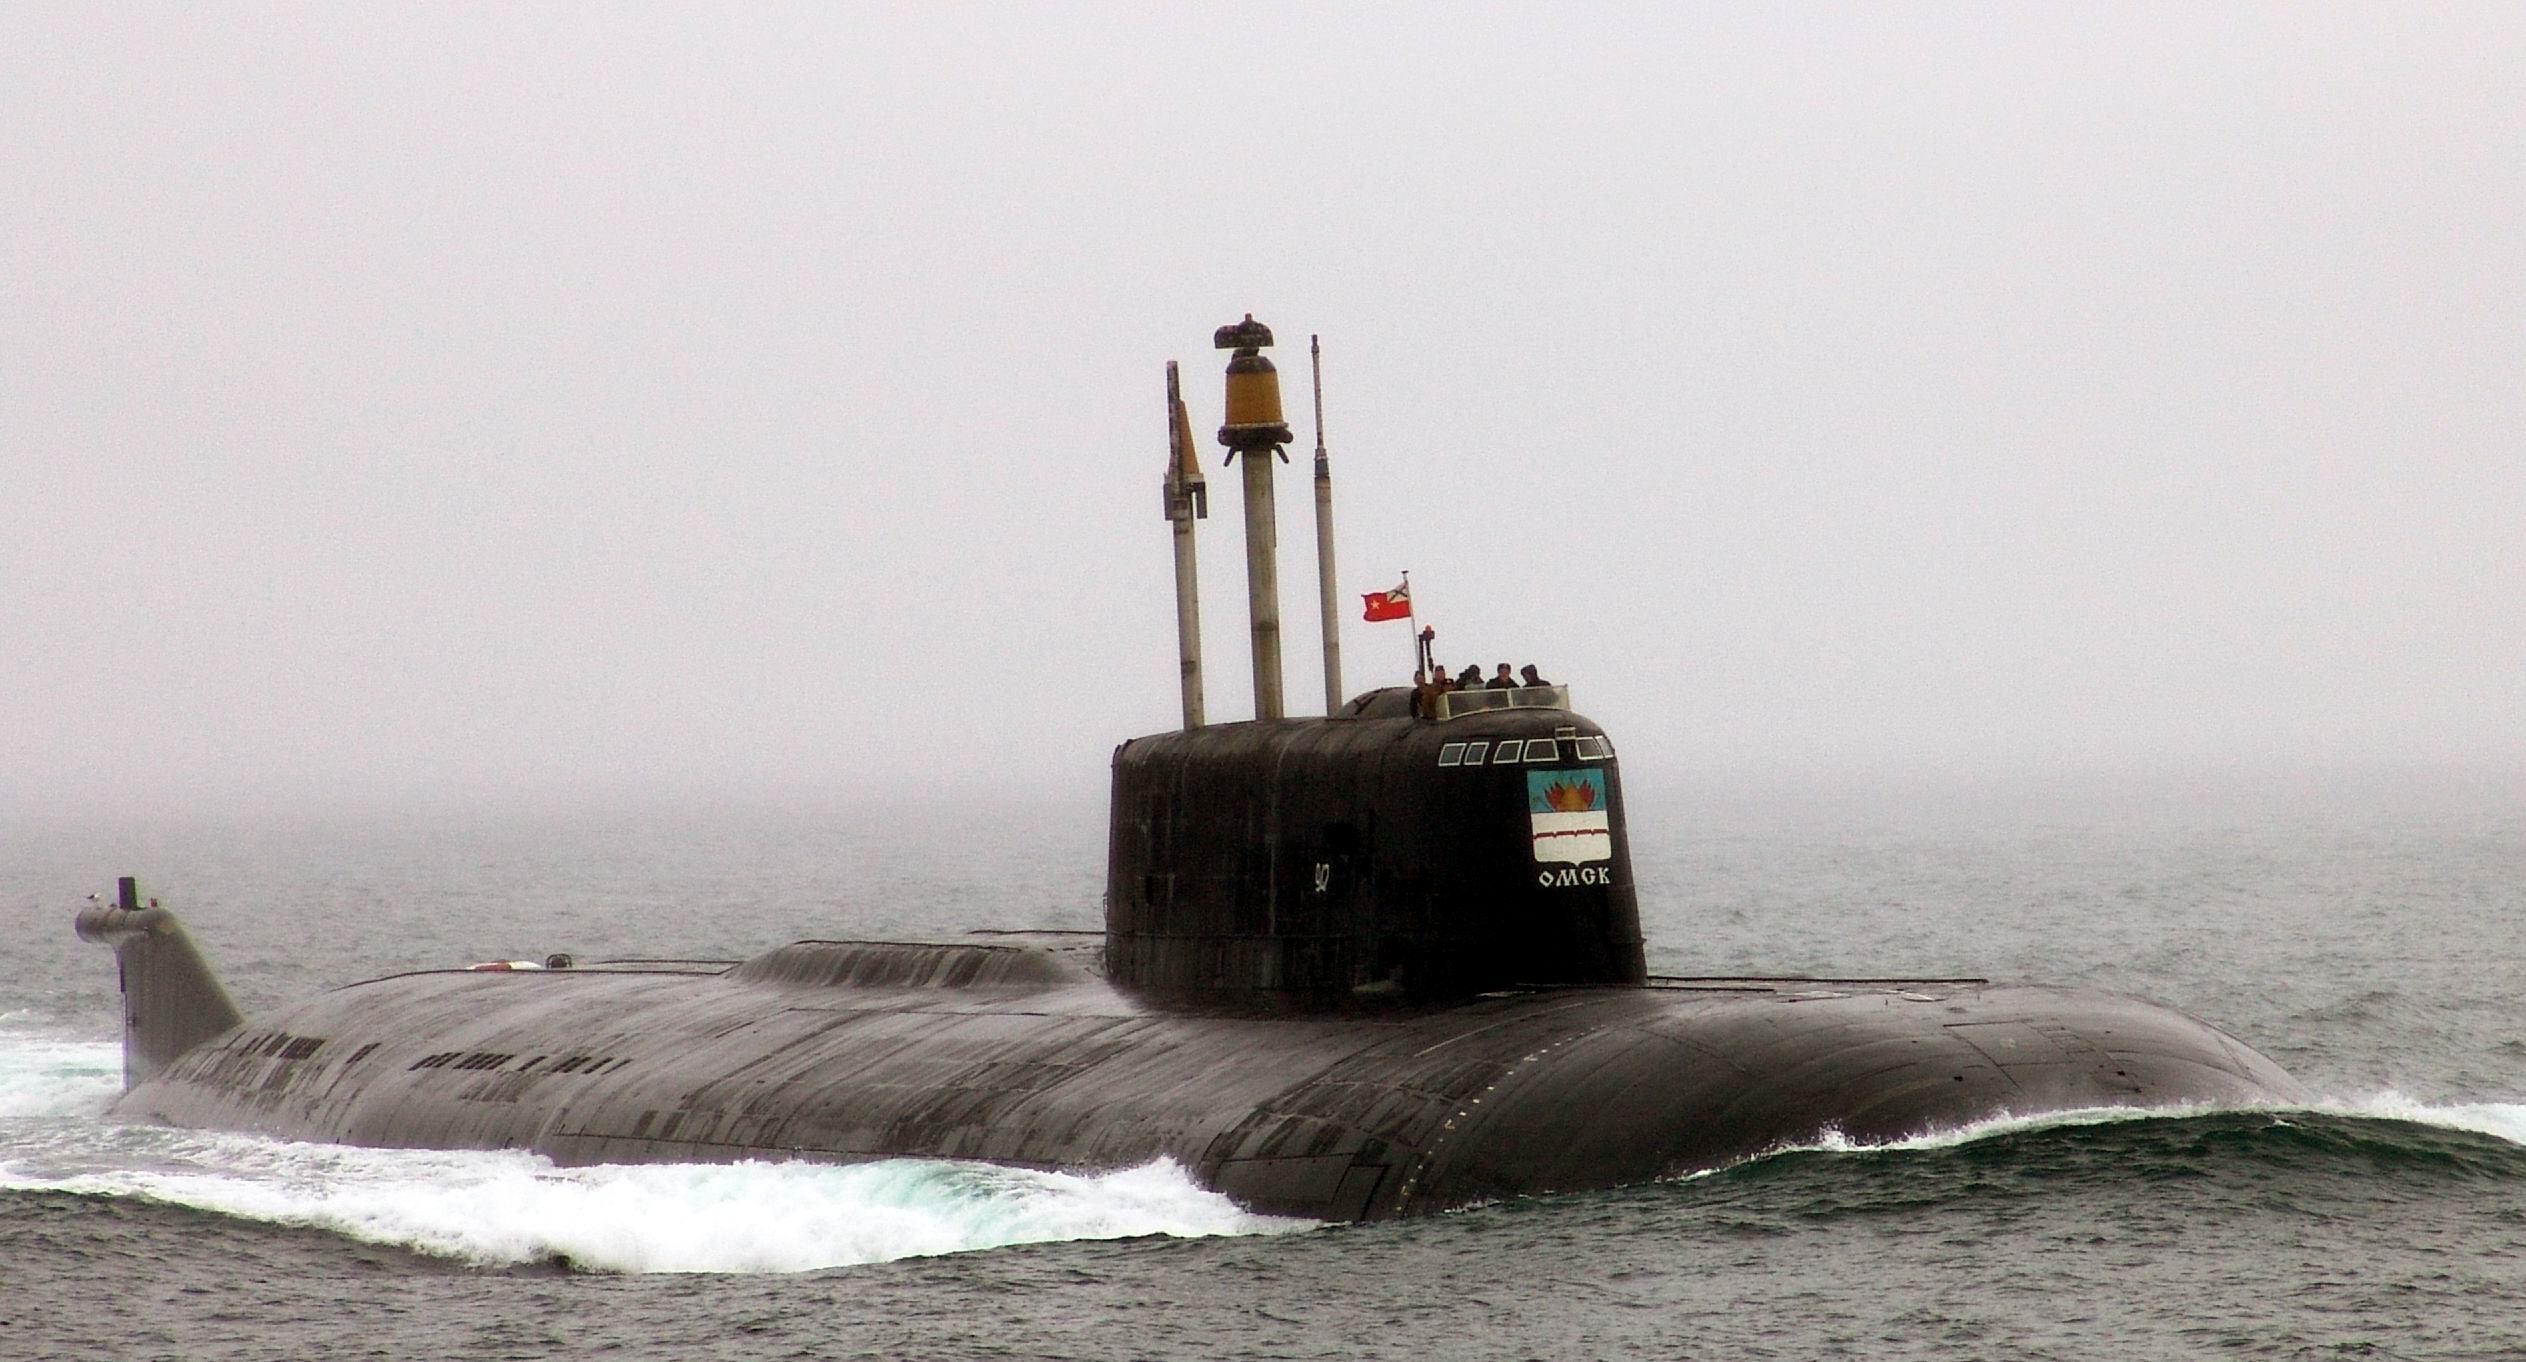 Лодка б н. Подводные лодки проекта 949а «Антей». Атомная подводная лодка к-186 «Омск». Подводная лодка Омск проекта 949а. Атомный подводный крейсер к-186 "Омск".